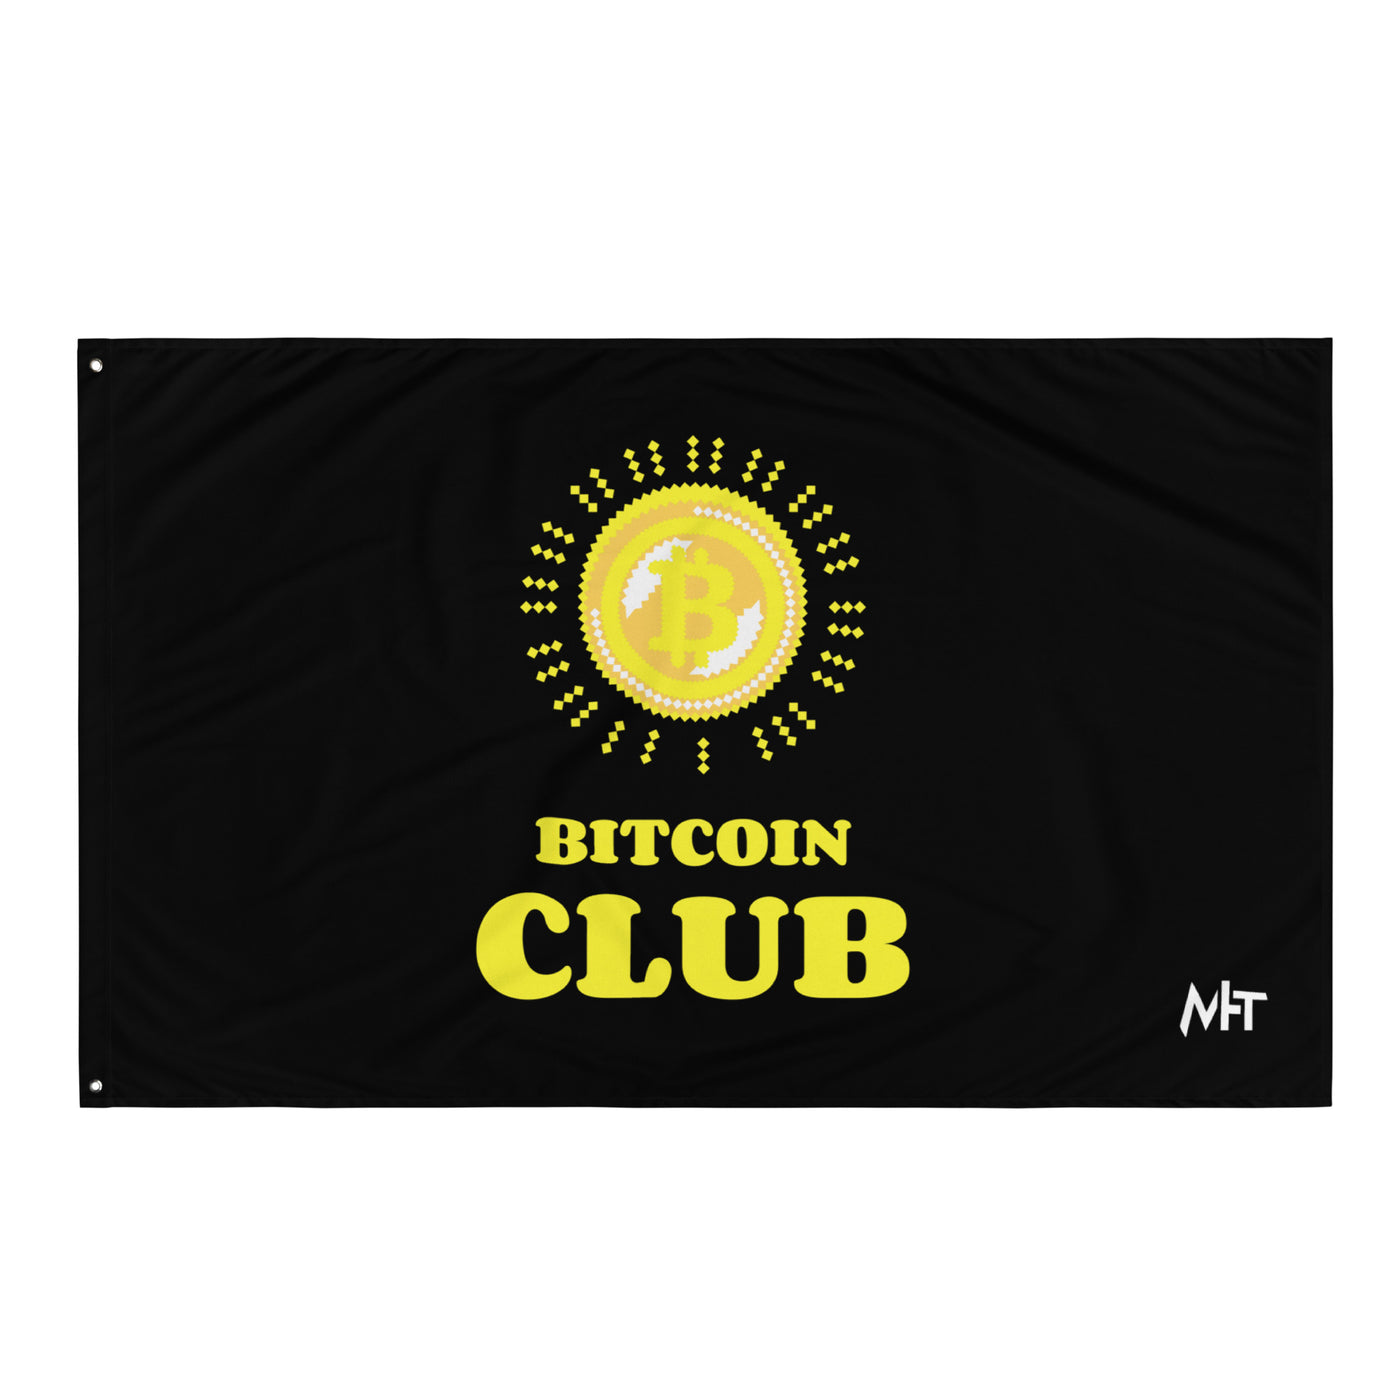 BITCOIN CLUB - Flag